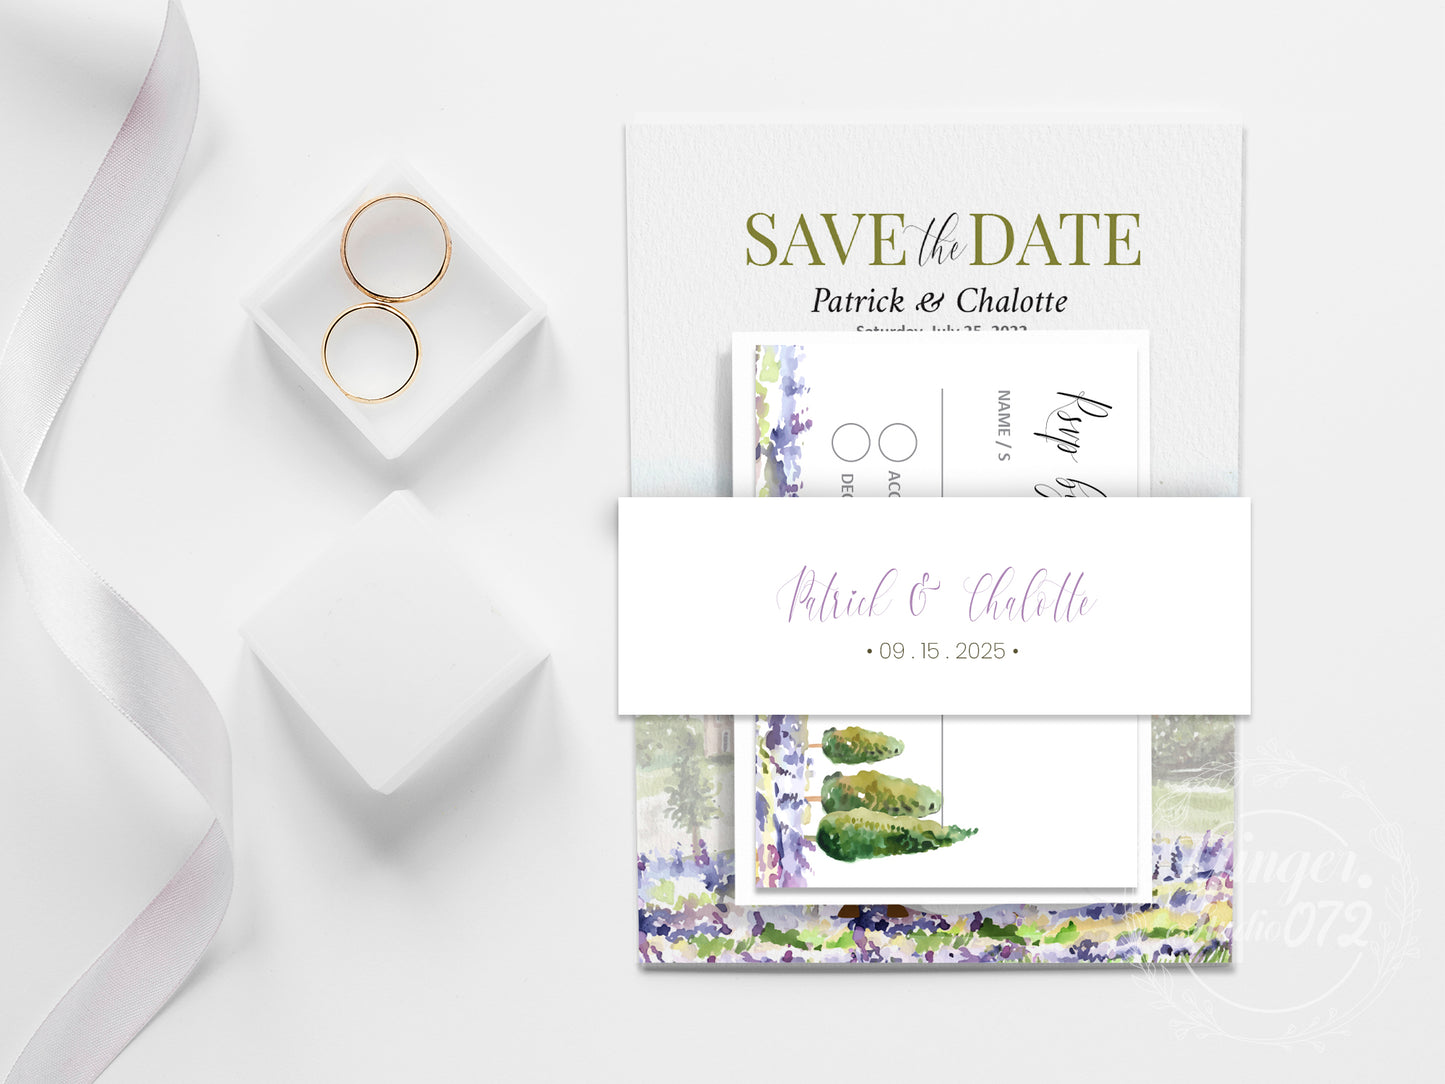 Cute Wedding invitation, E-invitation Template set #wd0279